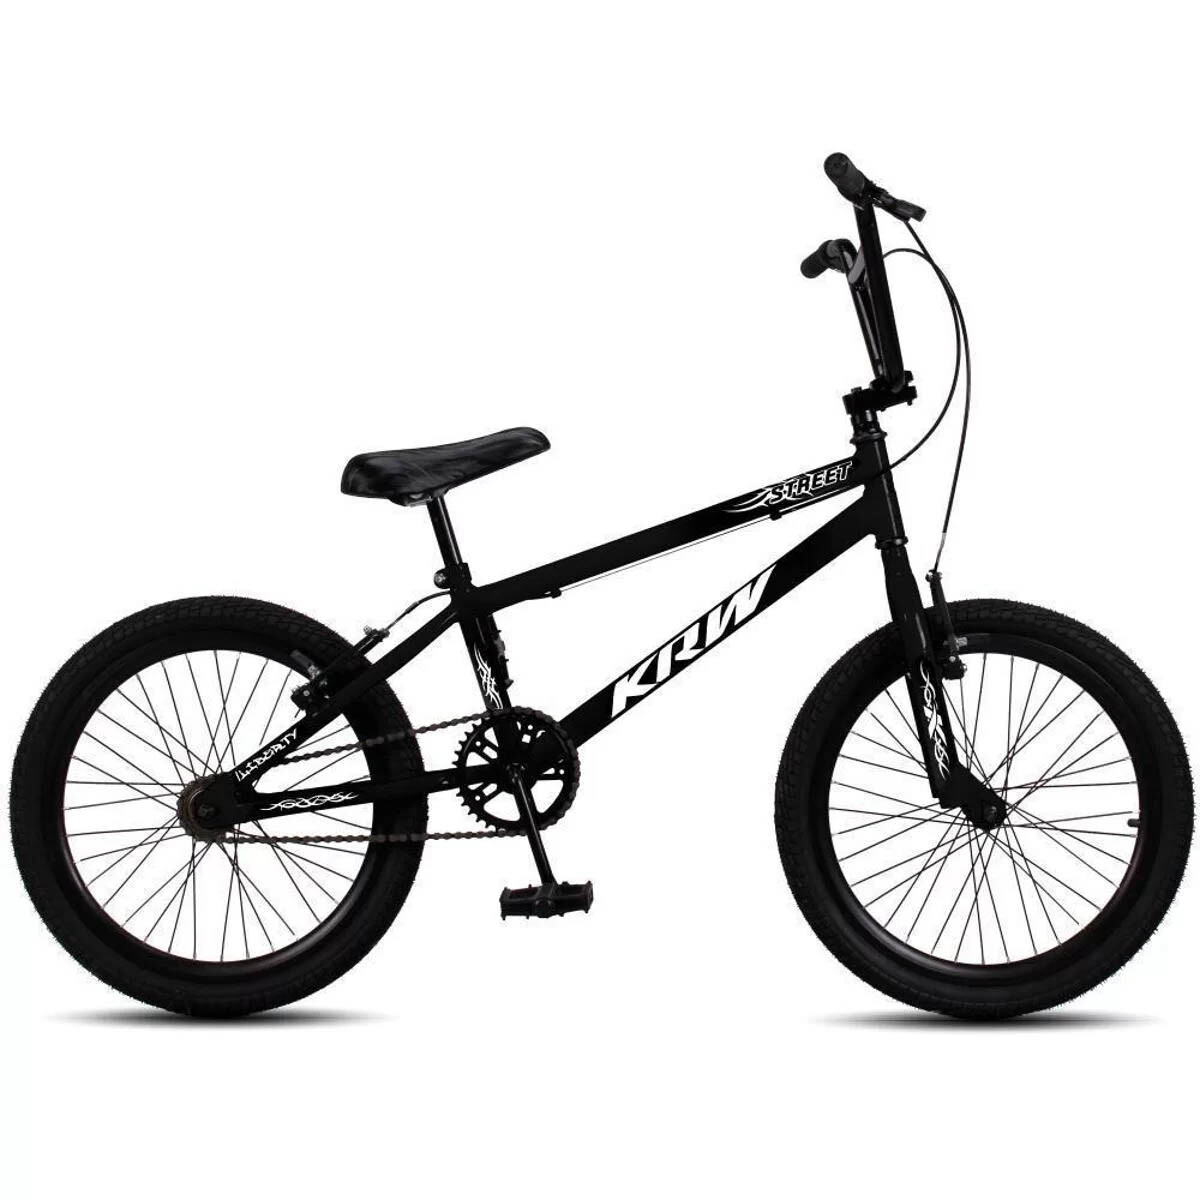 Bicicleta Krw Freestyle R20 Cross Bmx Acrobacias Niño - Negro 